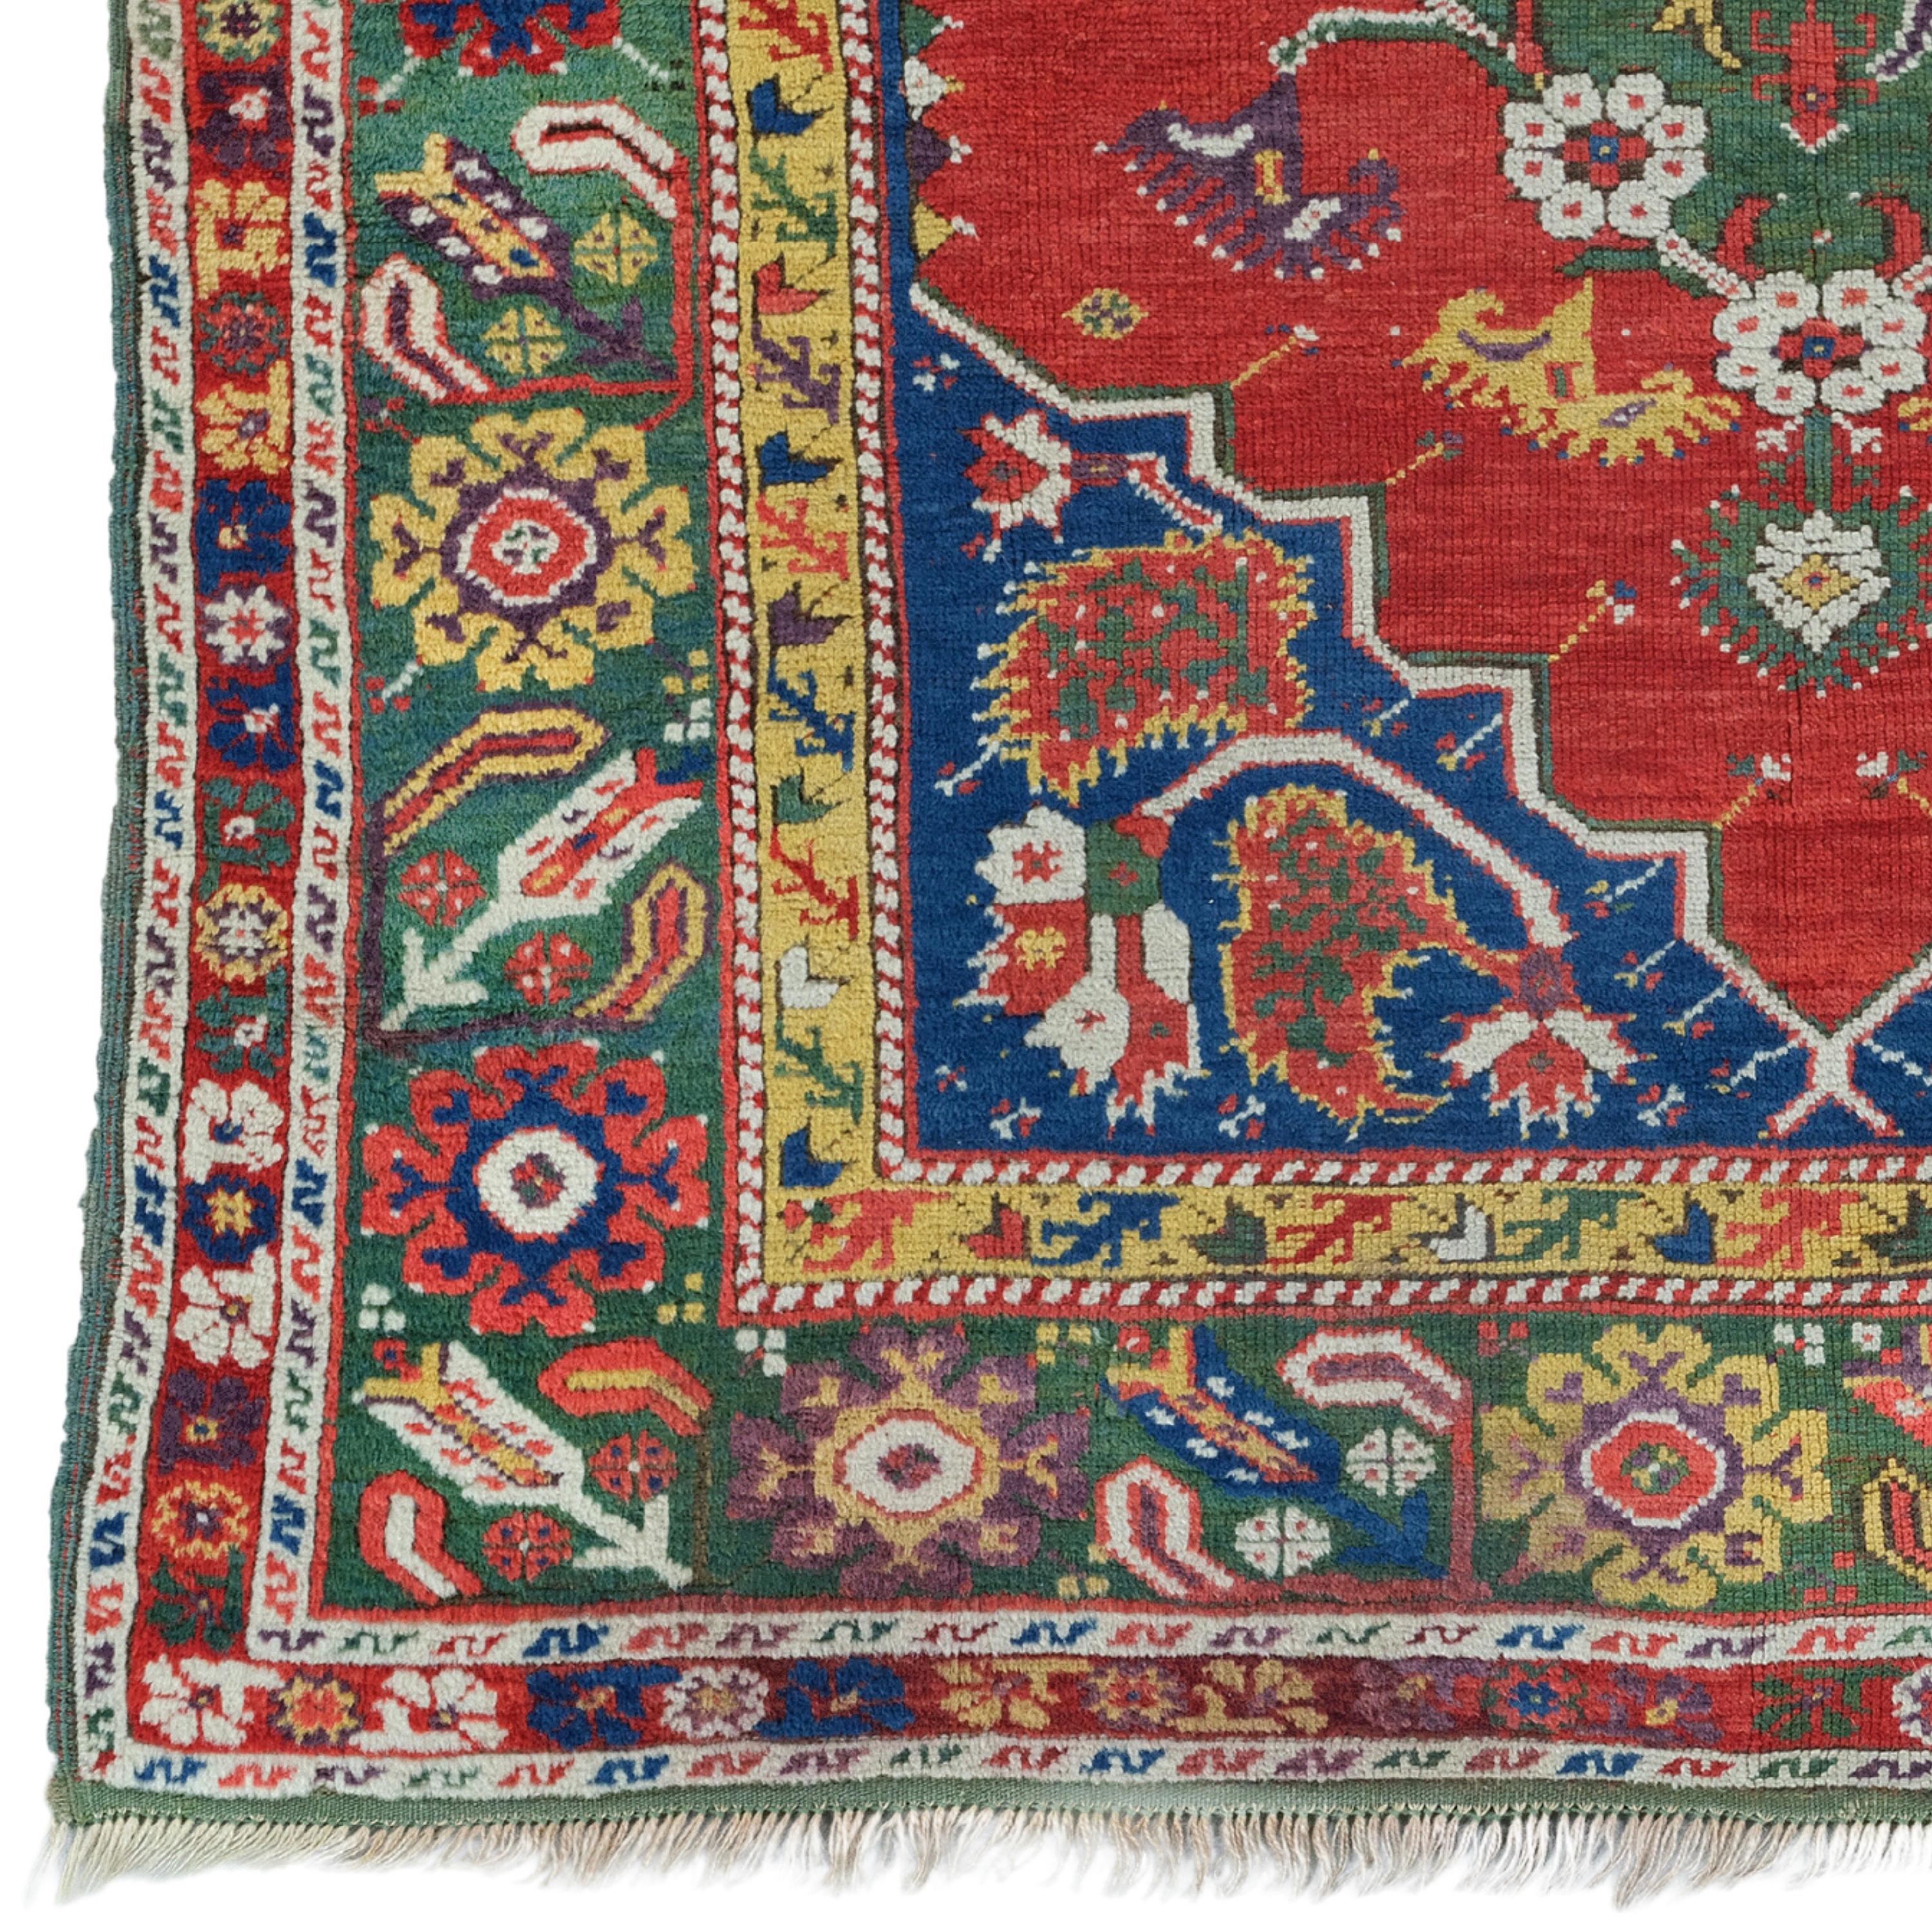 Une merveille de tissage intemporelle Cet élégant tapis Ushak antique du XVIIIe siècle attire l'attention par sa riche palette de couleurs et ses motifs complexes. Le médaillon central et les motifs floraux qui l'entourent reflètent les techniques